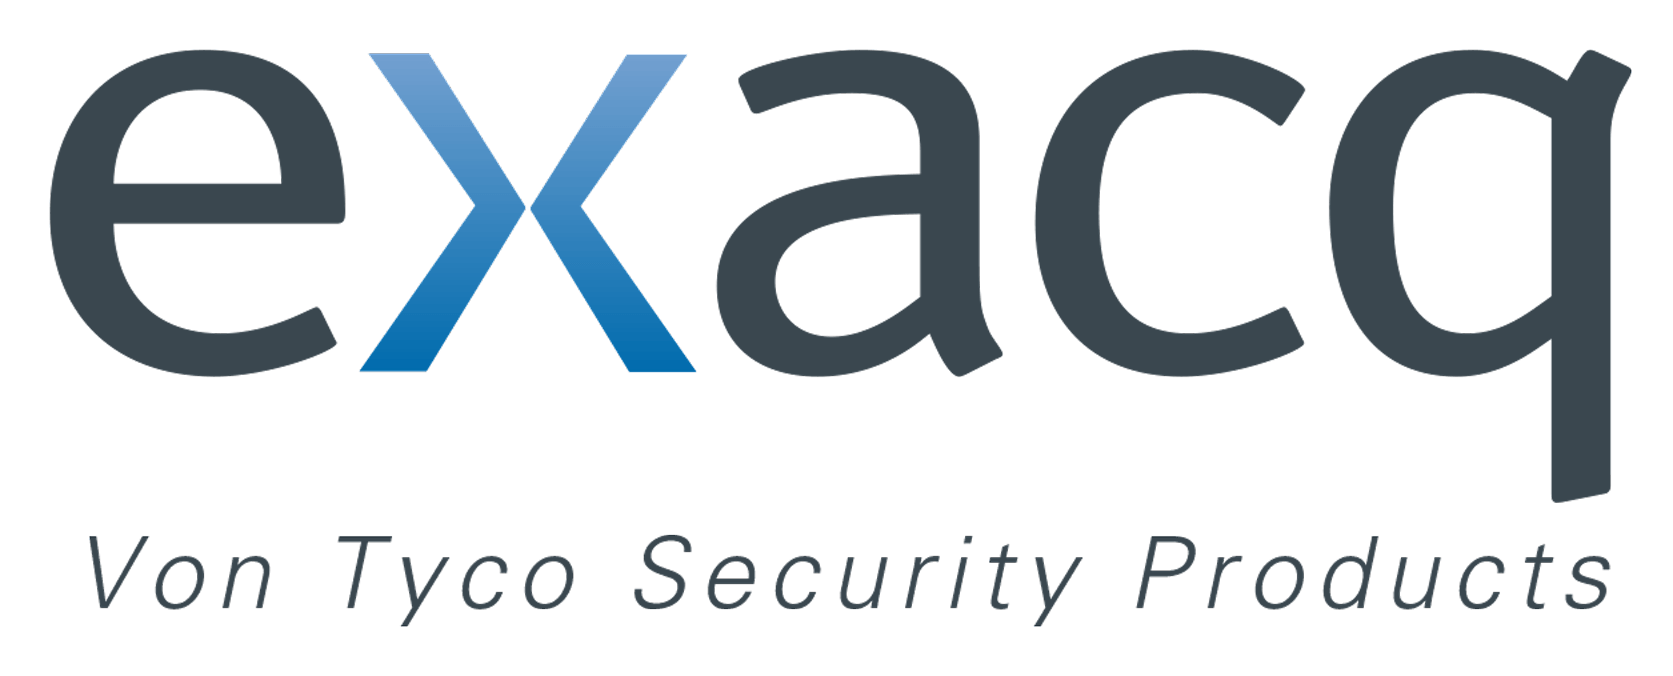 Tyco Logo - Exacq Company Logos. Exacq from Tyco Security Products